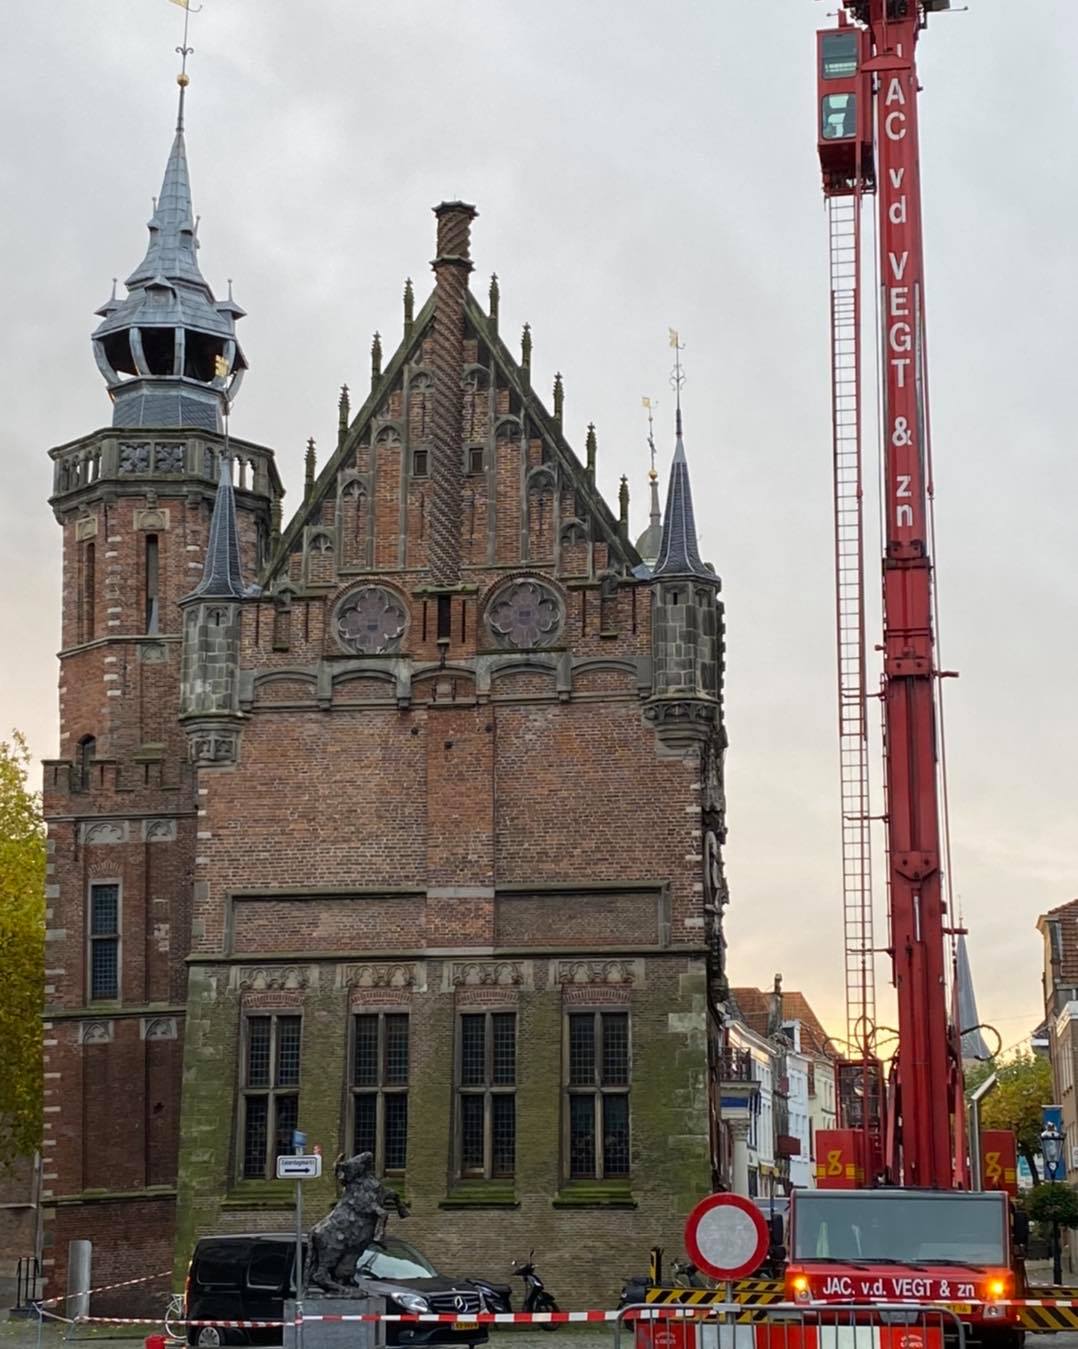 Oude stadhuis in Kampen is gerestaureerd door Voegbedrijf Heldoorn